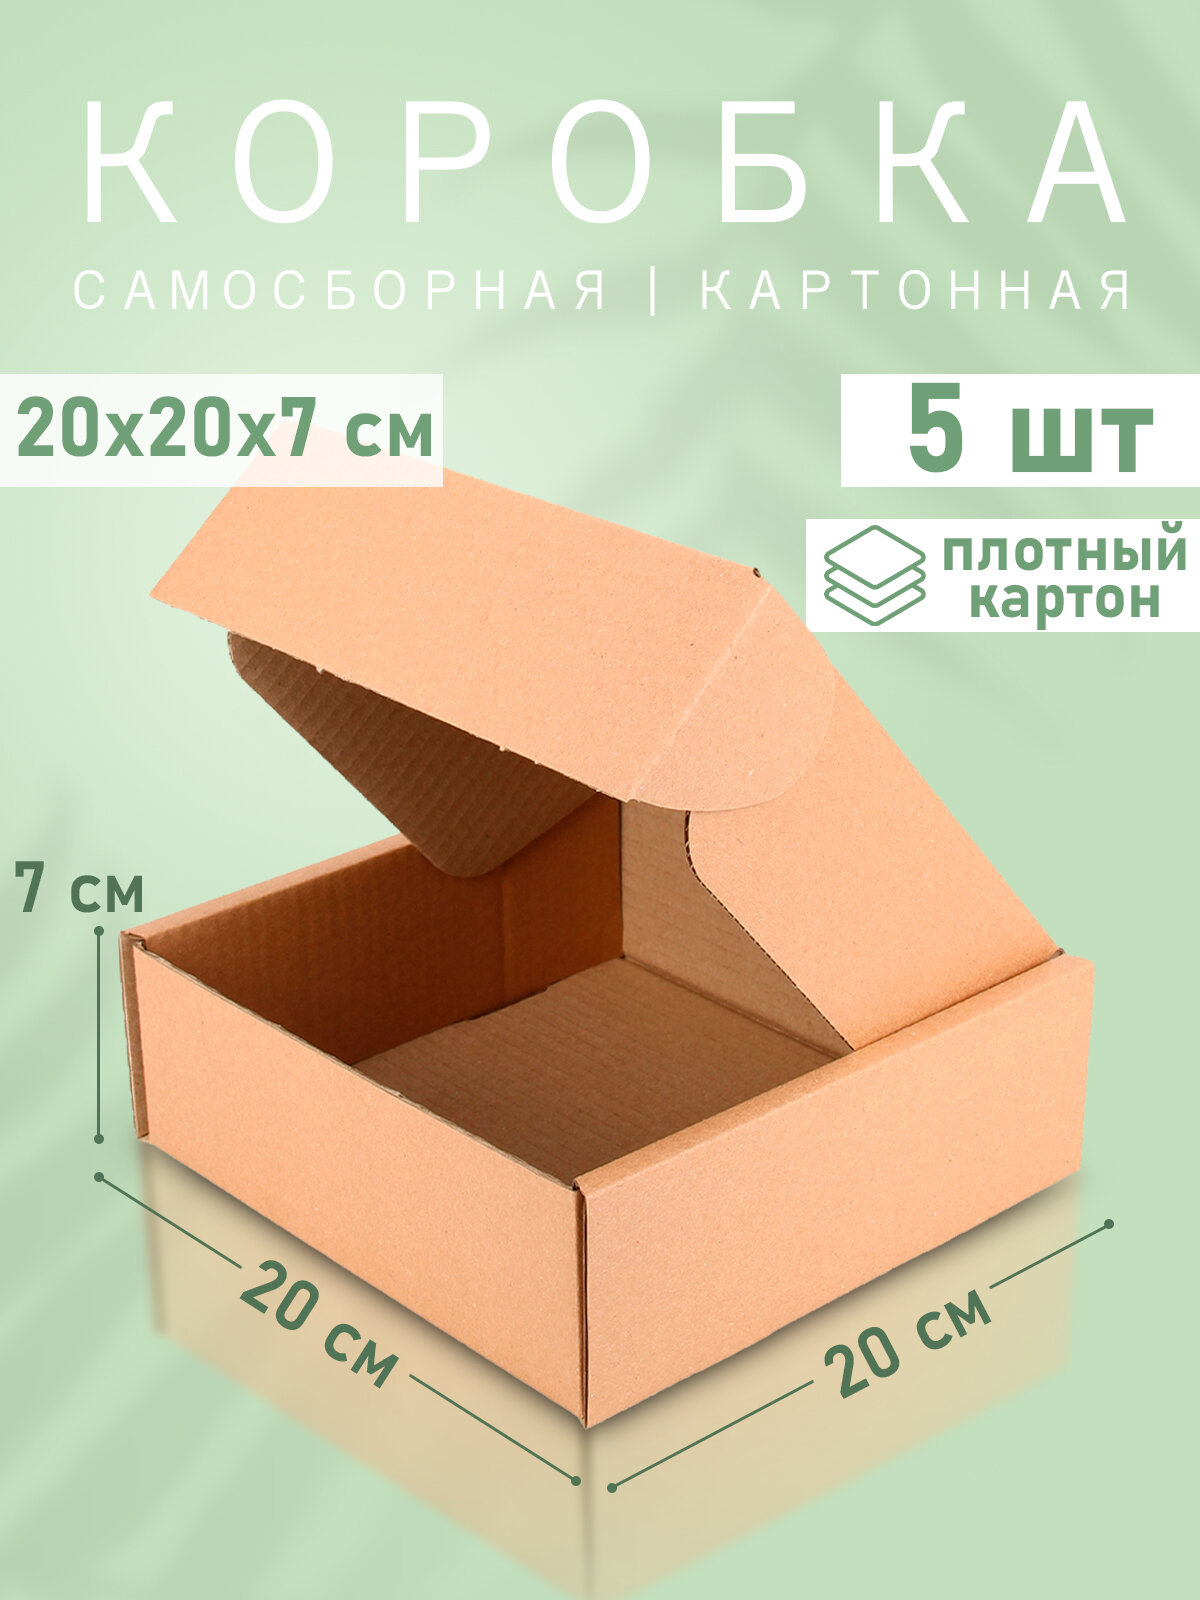 Самосборная картонная коробка 20*20 см - 5 штук